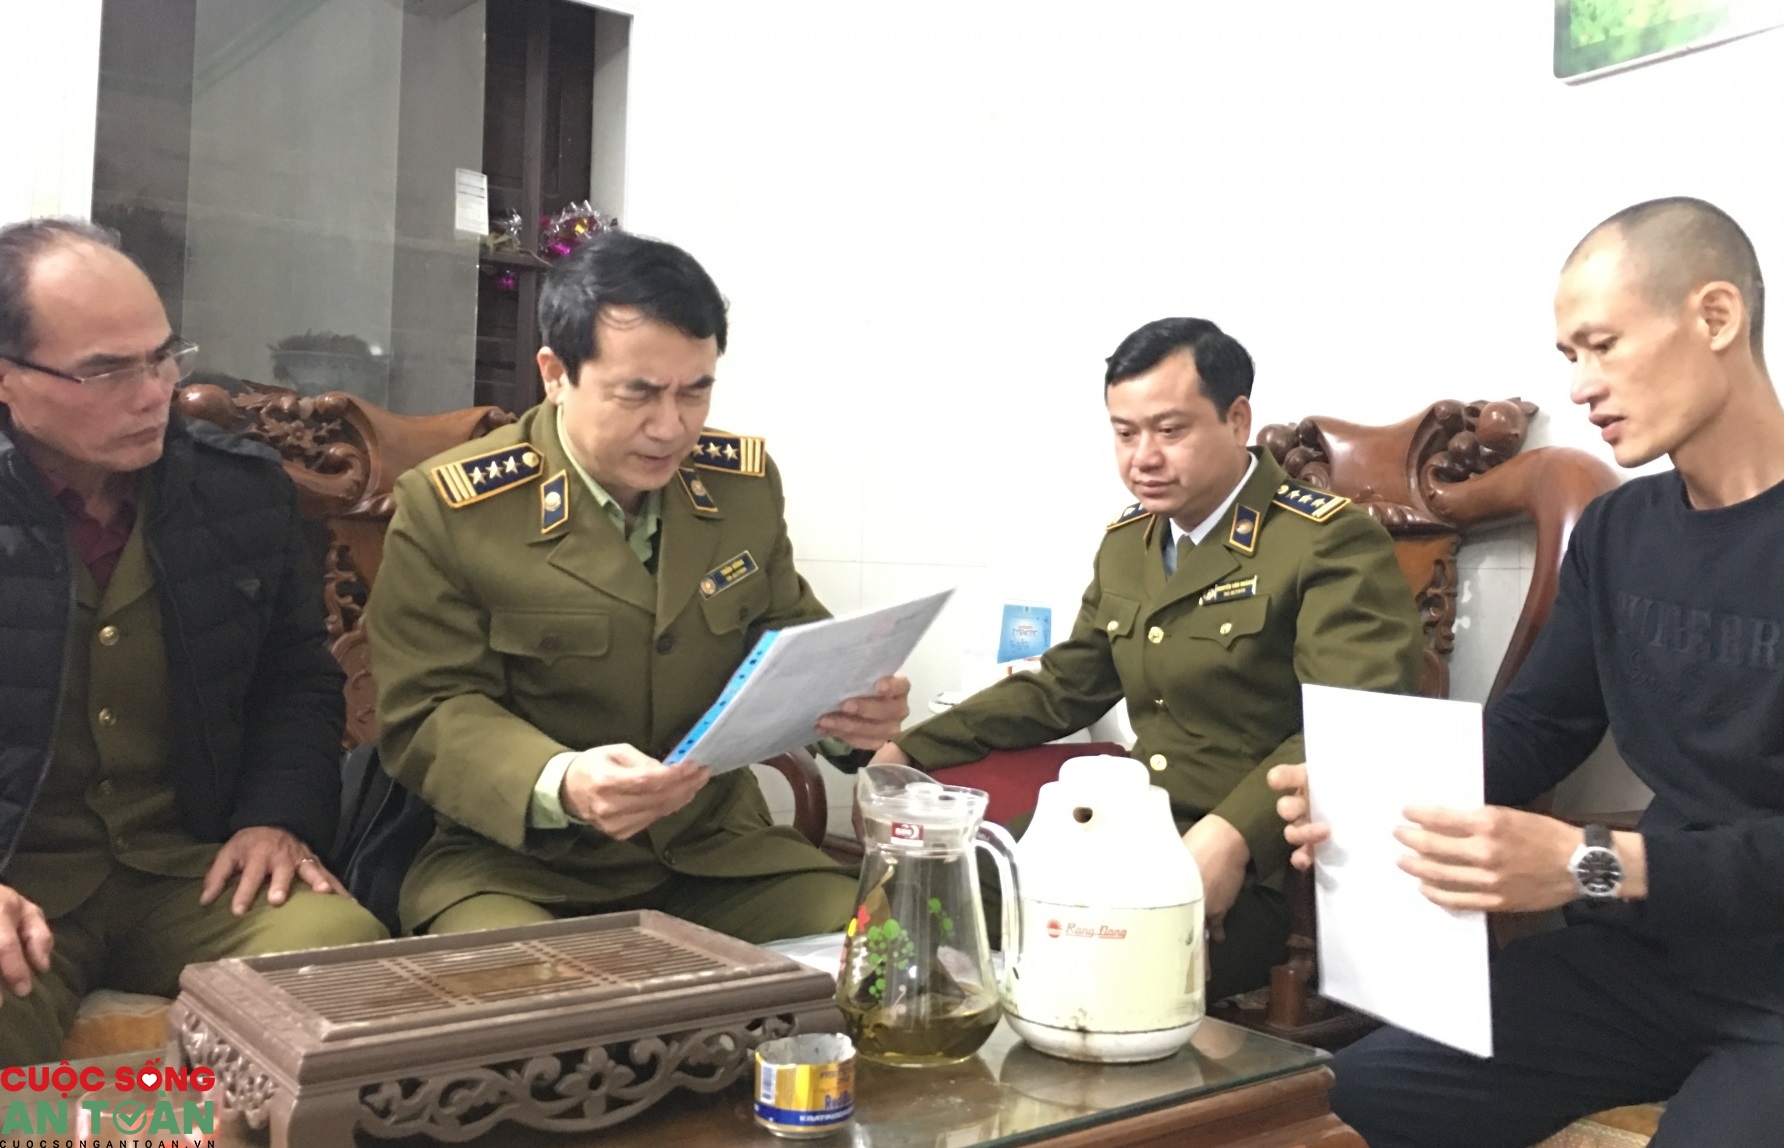 Bộ Công Thương thành lập Hội đồng kỷ luật lãnh đạo Cục QLTT Bắc Ninh